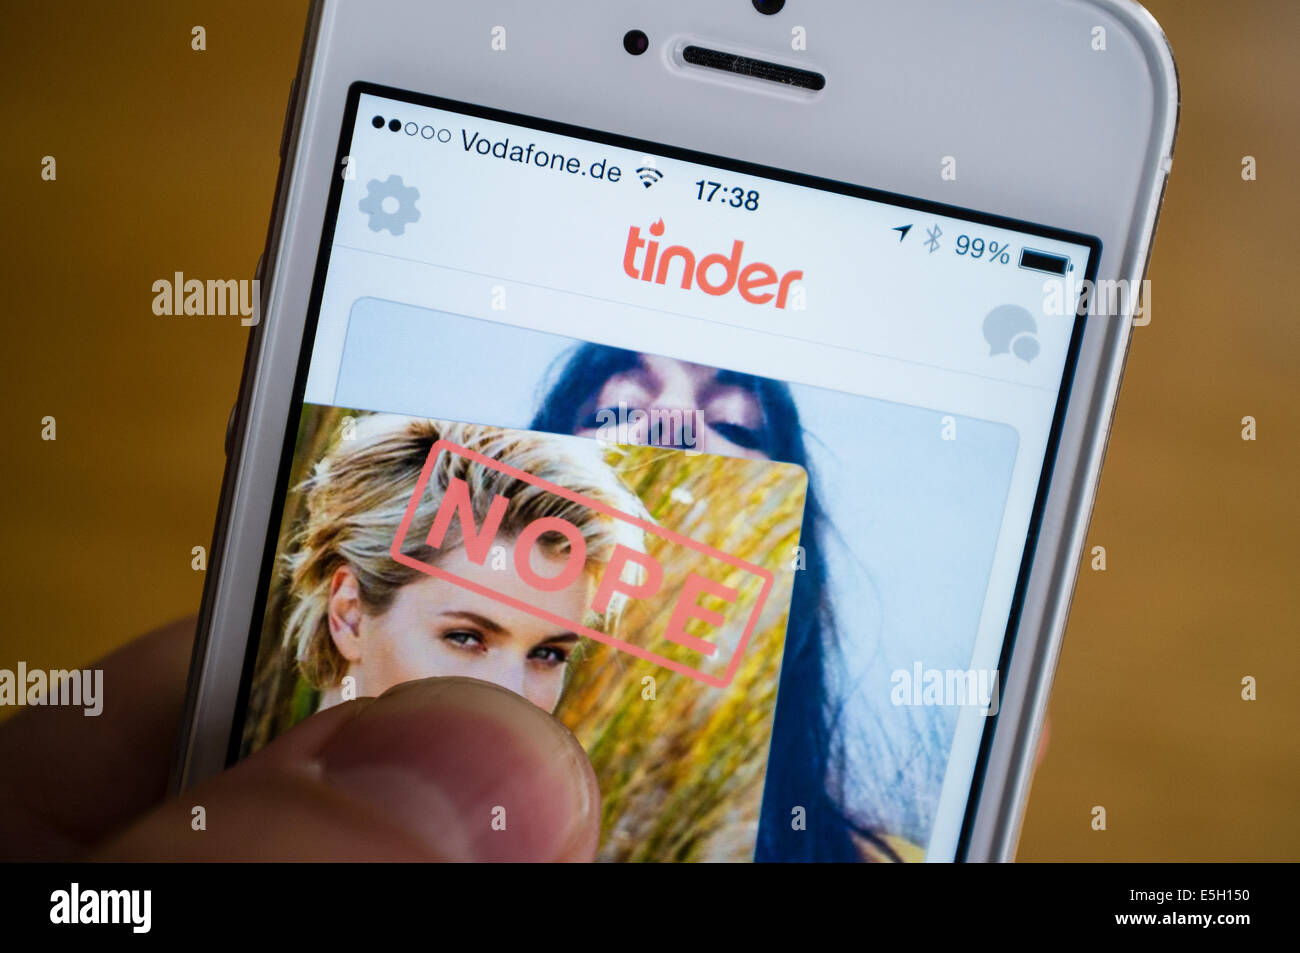 Zunder online-dating-app auf iPhone Smartphone Stockfoto